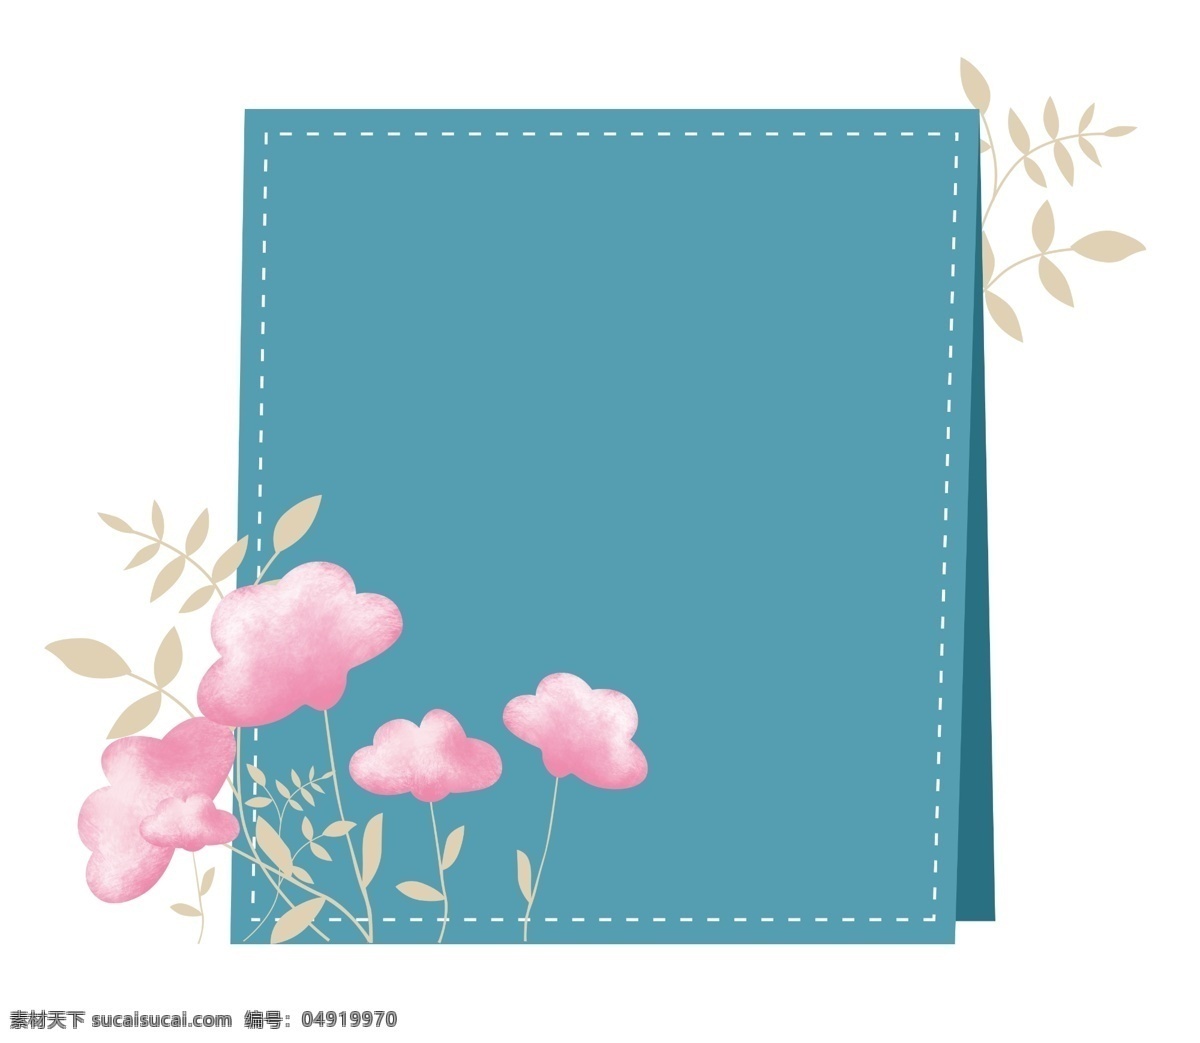 蓝色 清新 主题 边框 温馨 小花 花草 叶子 粉色 花朵 植物插画 植物边框 矩形边框 海报装饰 主题边框